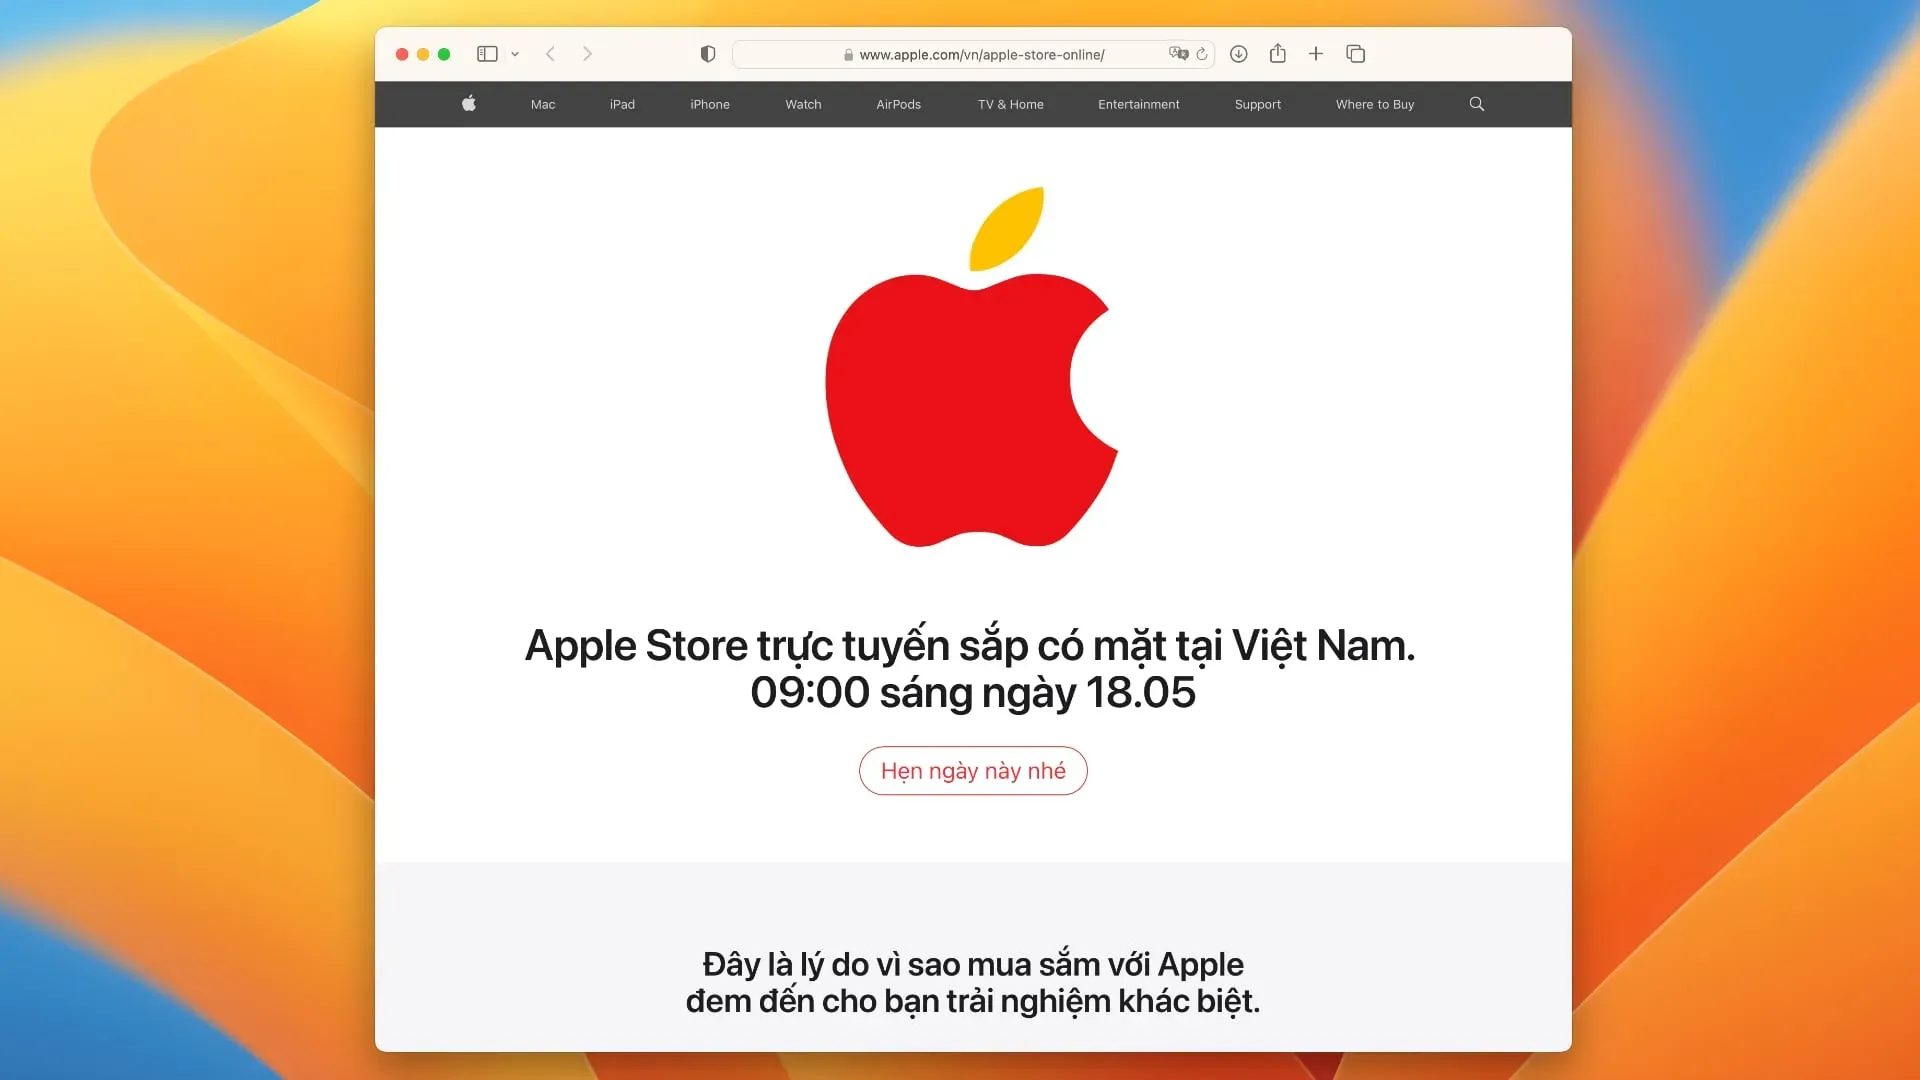 Apple's voorbeeldpagina die de online winkel in Vietnam aankondigt